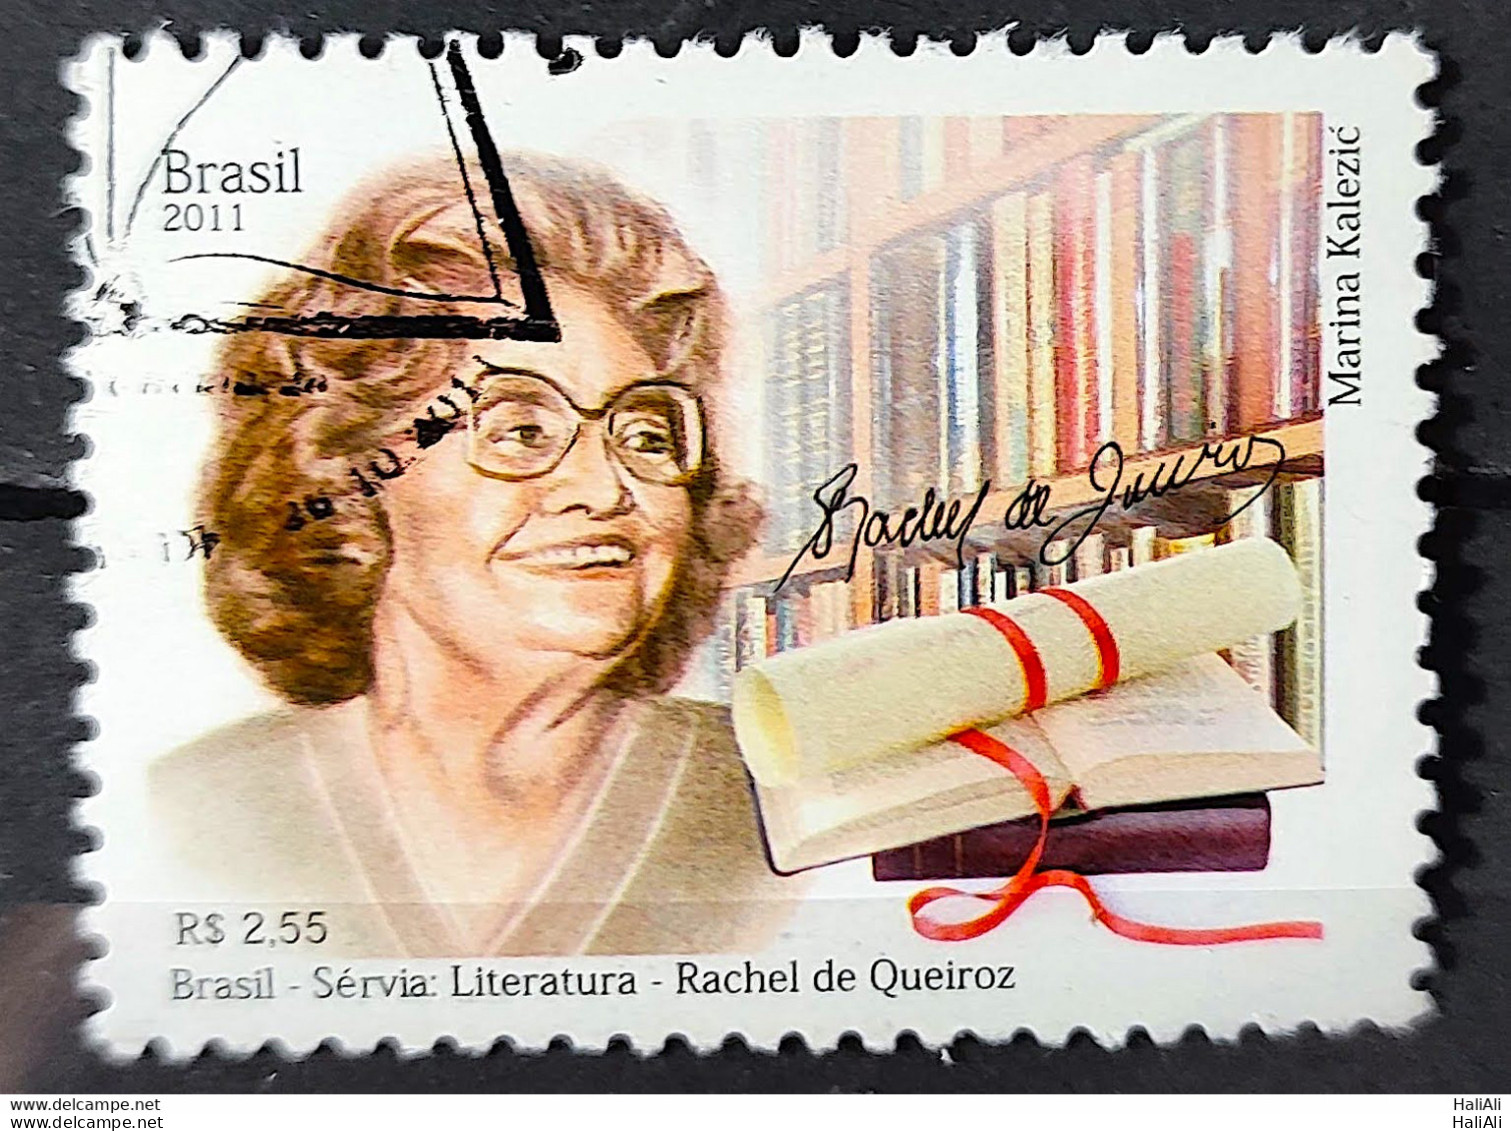 C 3149 Brazil Stamp Diplomatic Relations Servia Rachel De Queiroz Literature 2011 Circulated 1 - Gebraucht